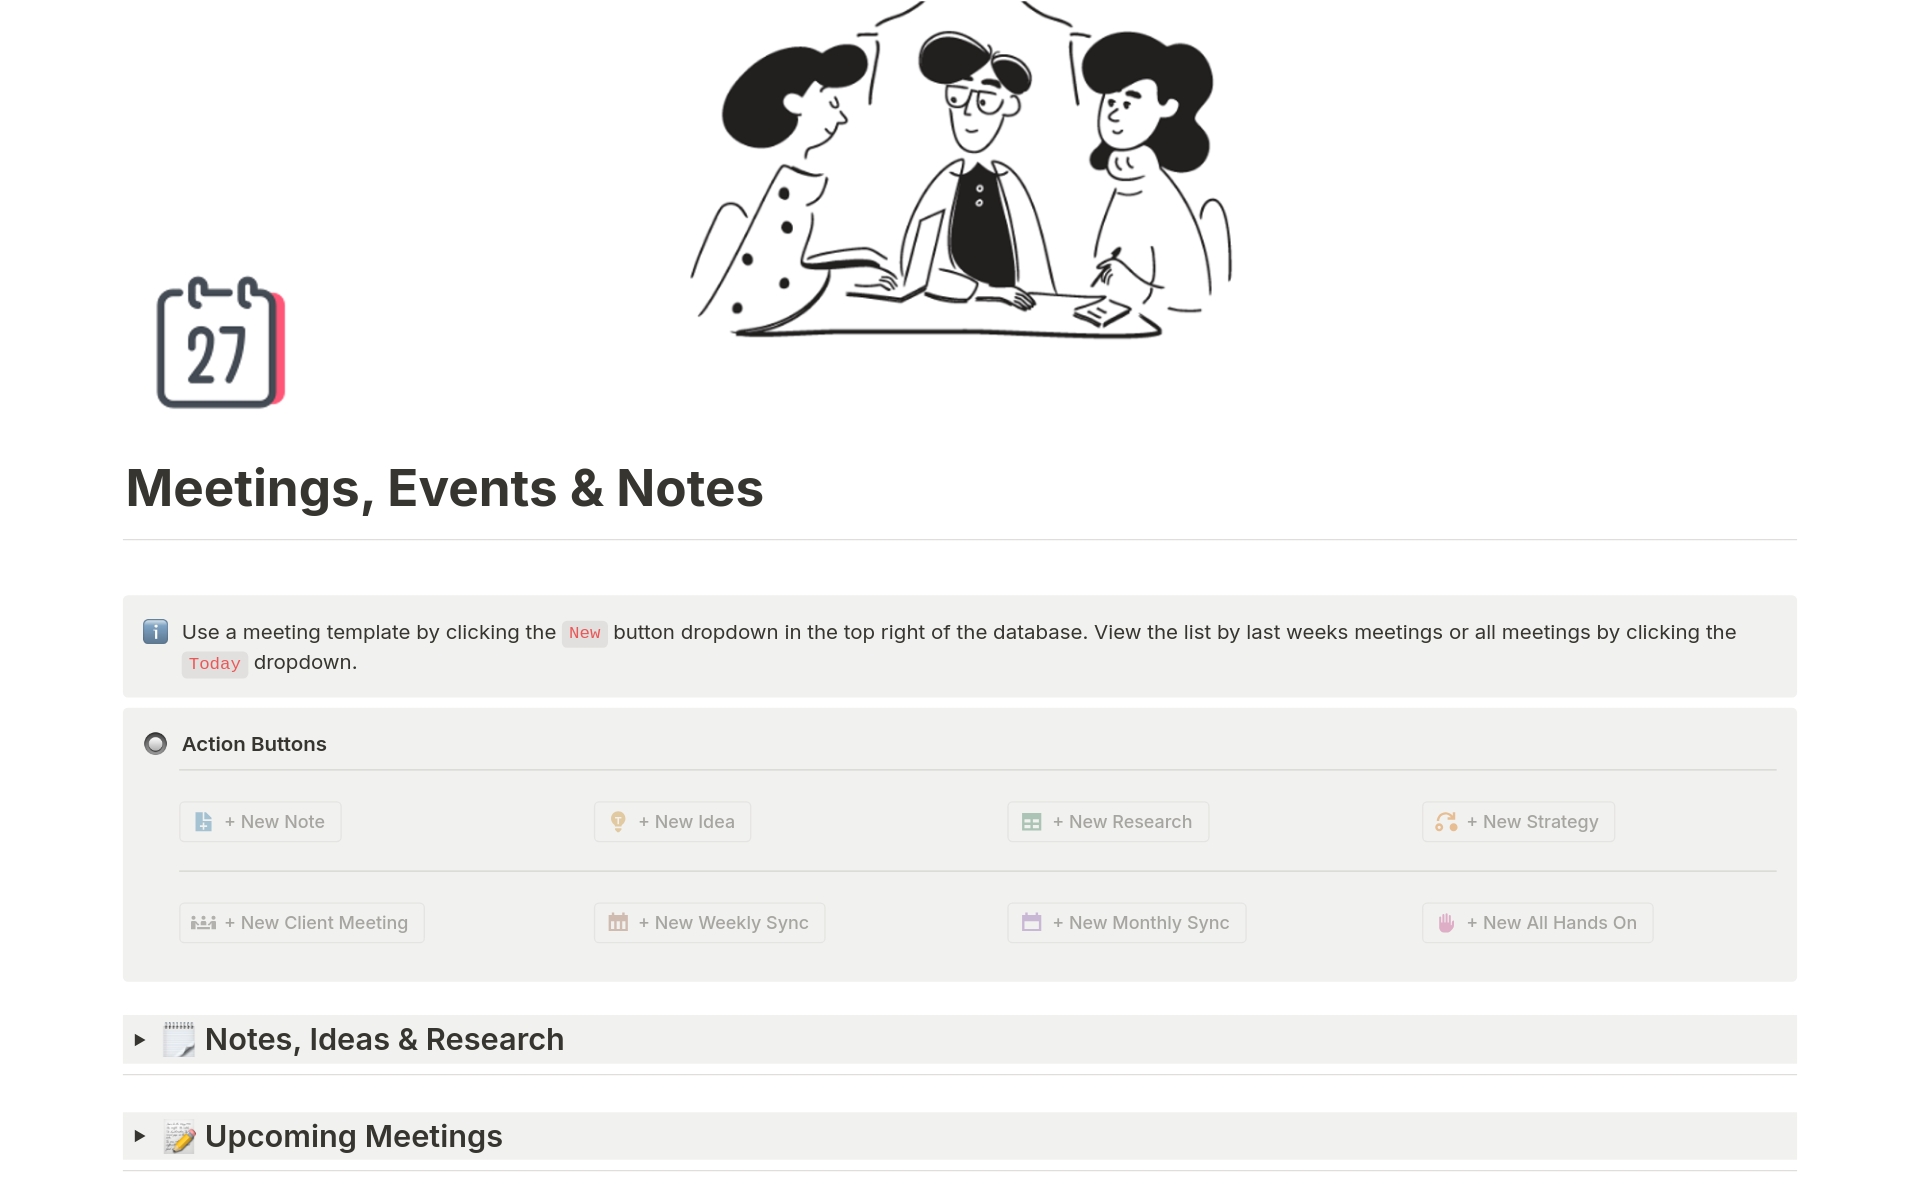 Vista previa de una plantilla para Meetings, Events & Notes Hub